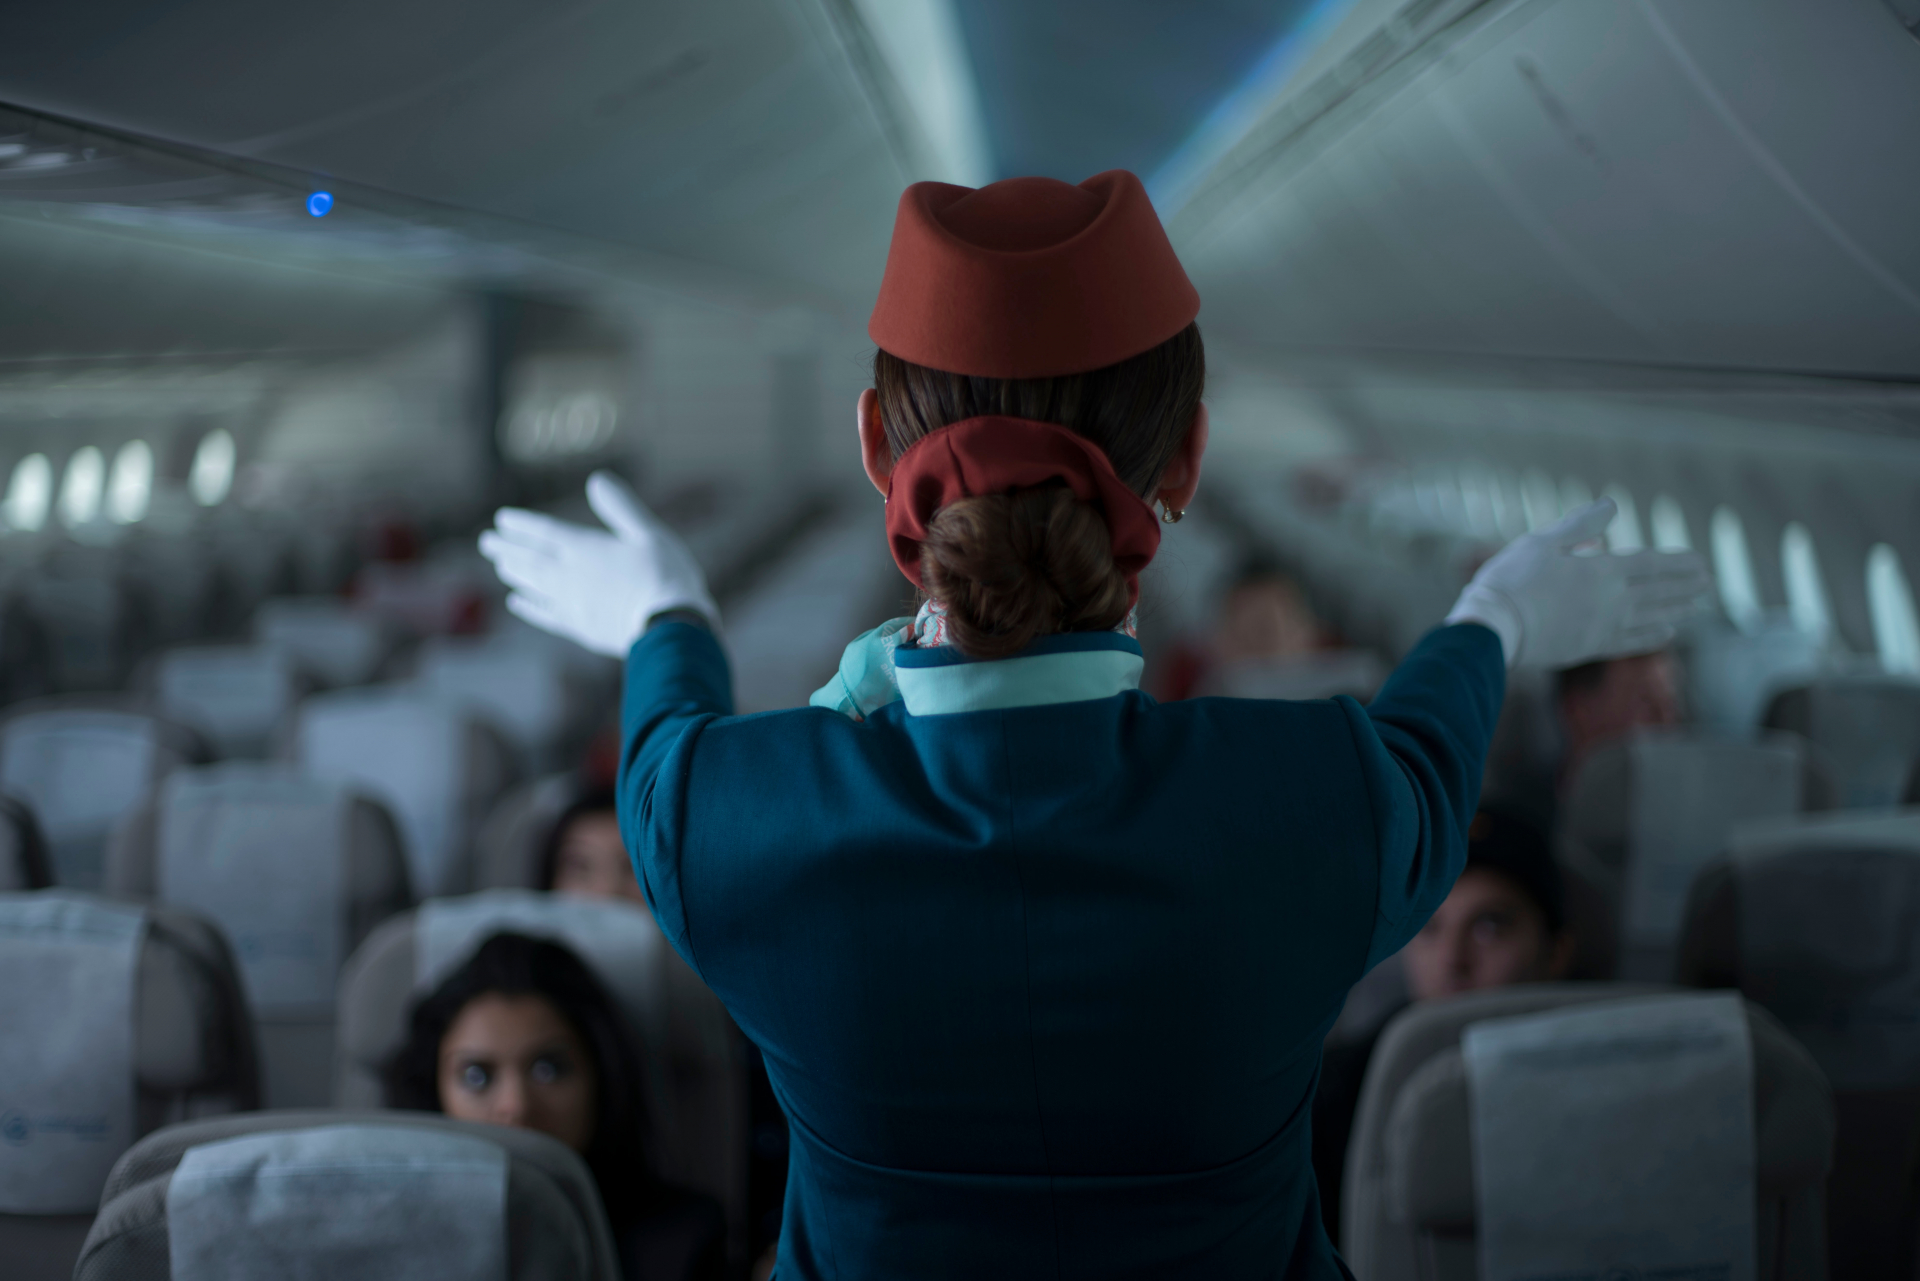 Такава наглост не се вижда често: Пътник с интимни предложения към стюардеса